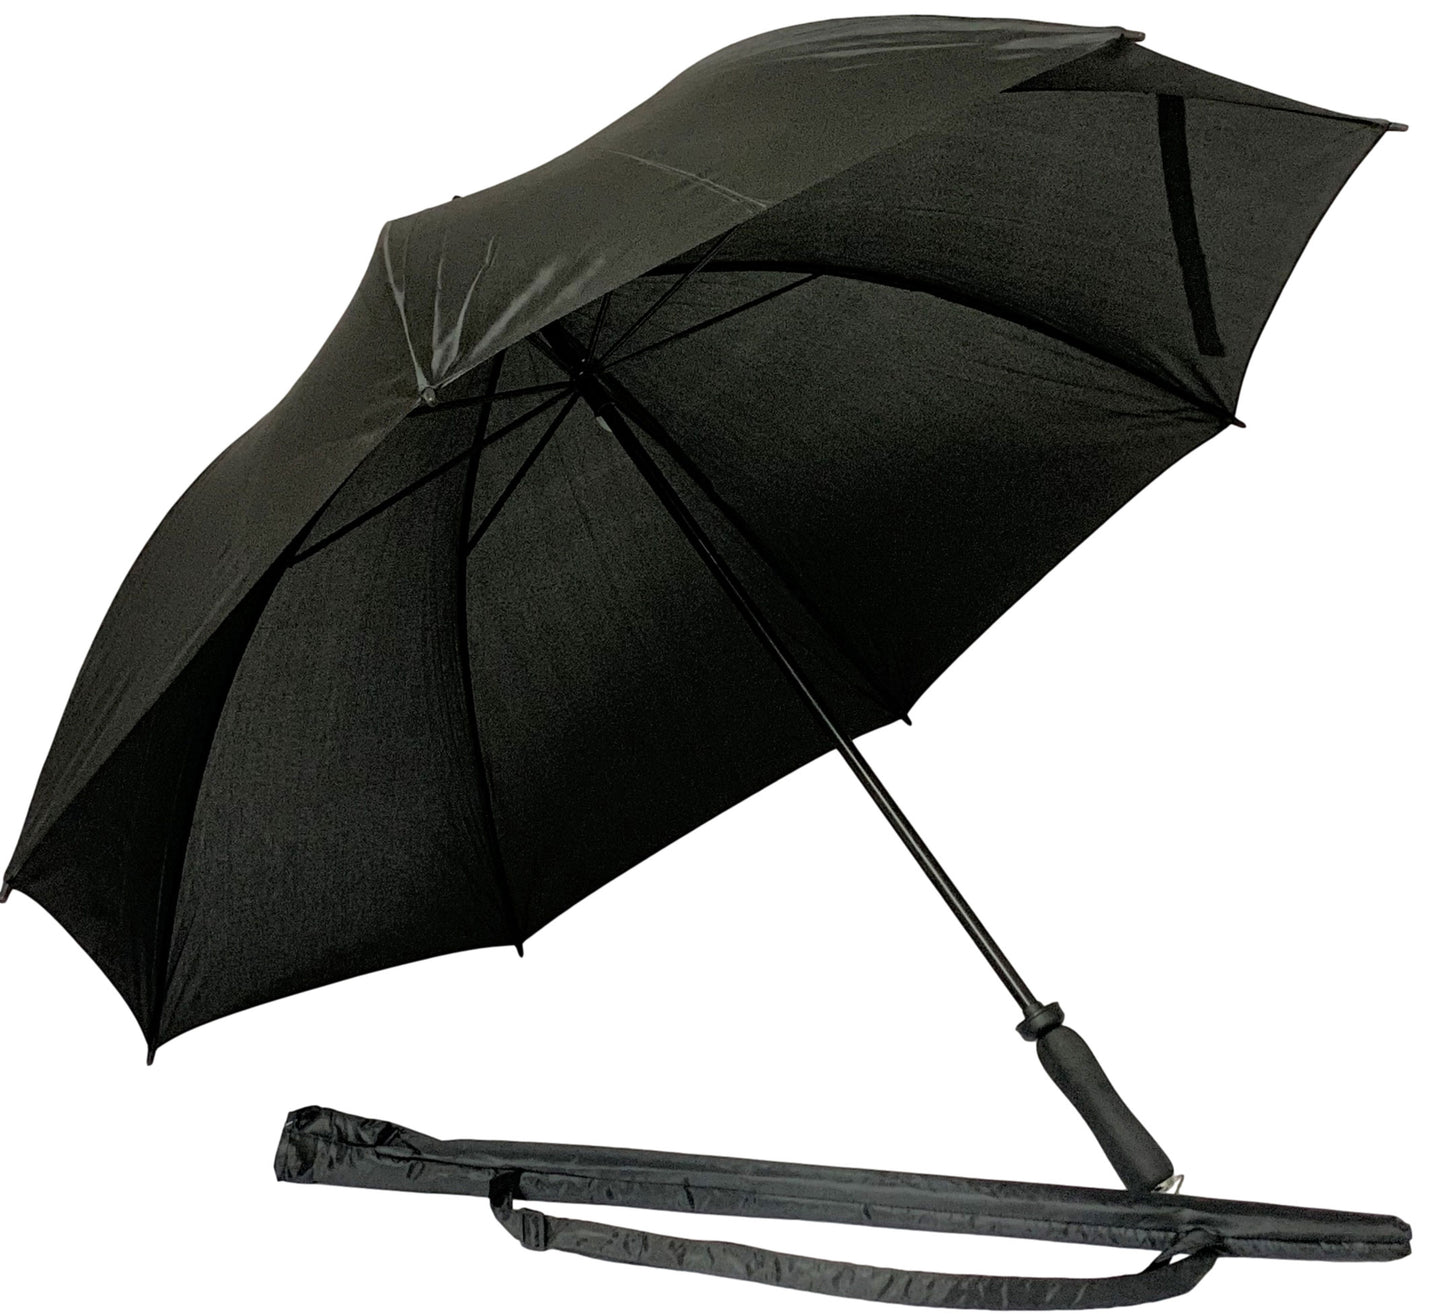 Μαύρη ομπρέλα συνοδείας, μακριά, με 8 διπλές ακτίνες.